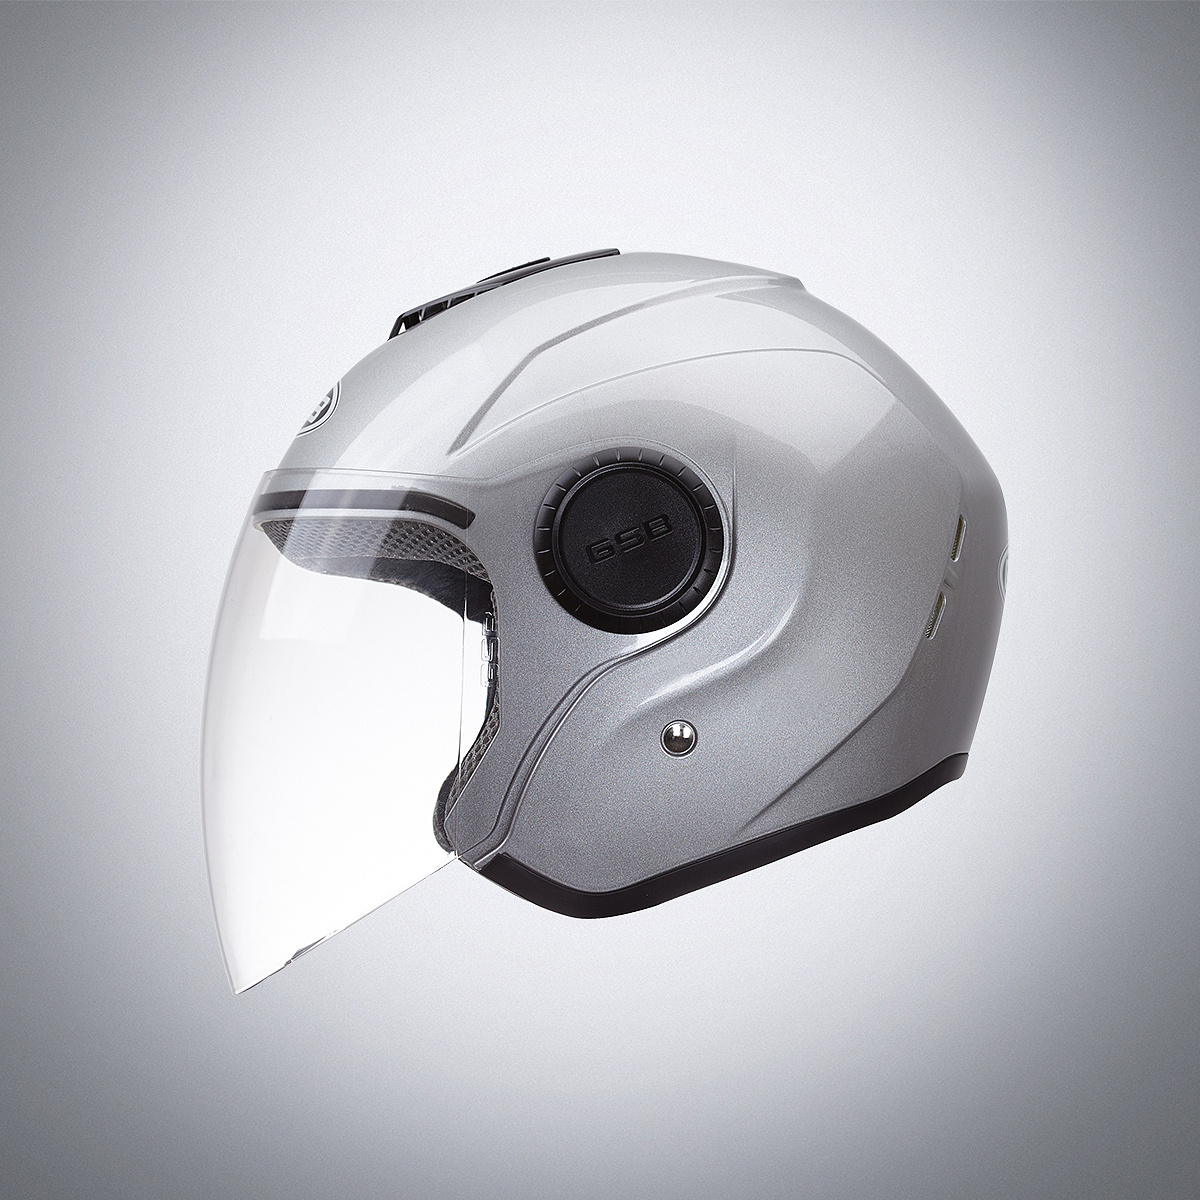 【概念设计】Ruroc 黑色炫酷高科技头盔设计~ - 普象网